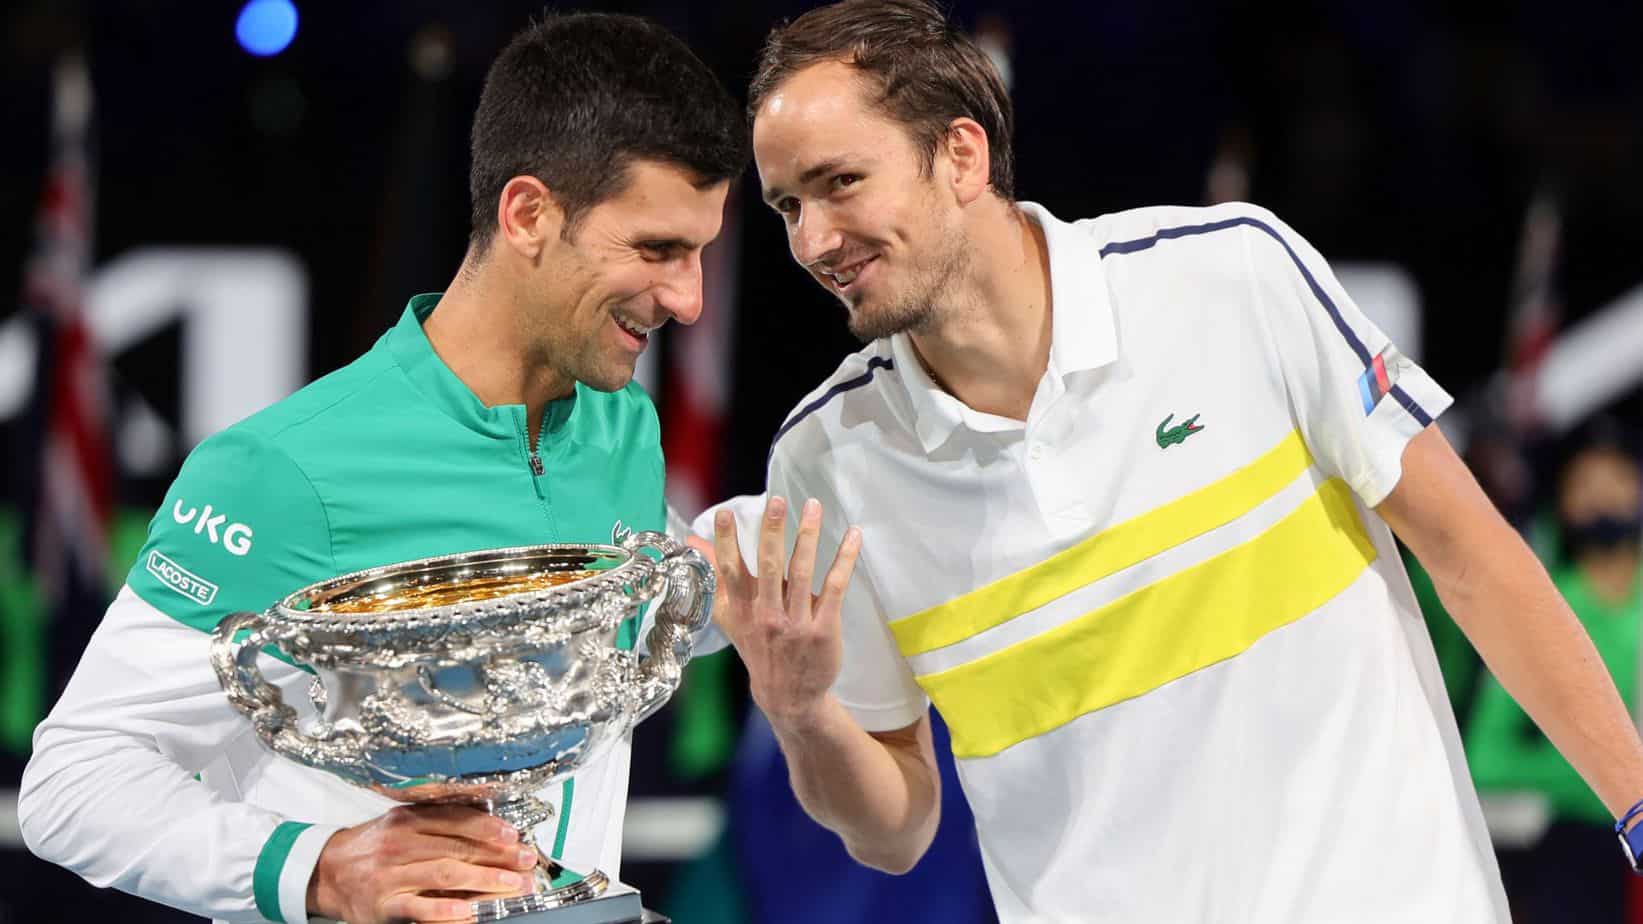 Prognóstico Novak Djokovic – Daniil Medvedev | Antevisão da Final do Aberto dos EUA